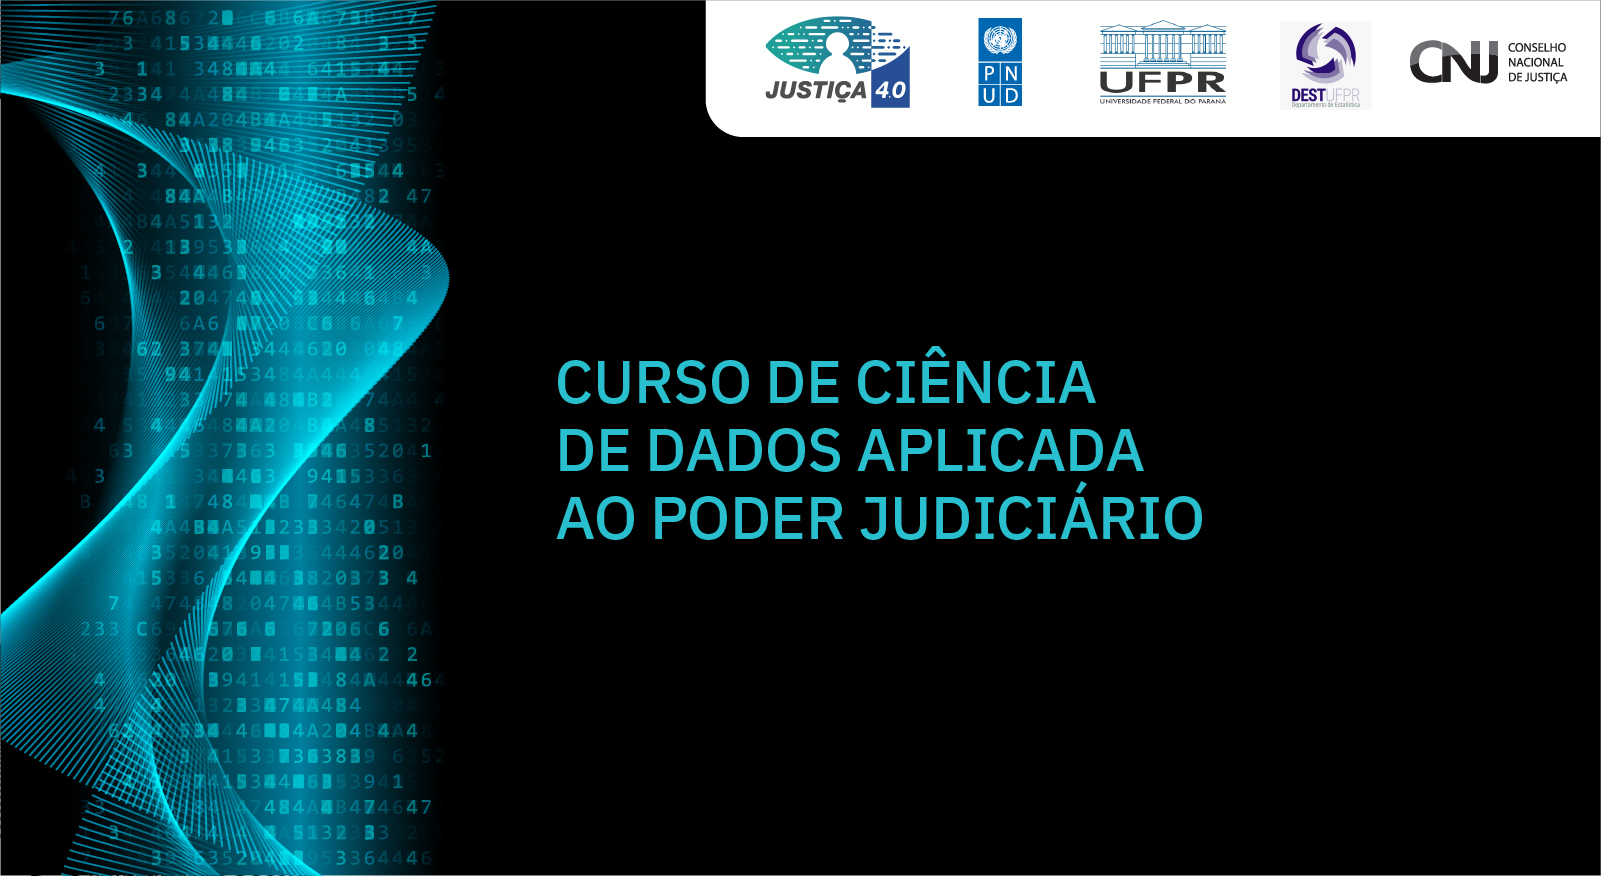 INSTITUCIONAL: Participe do webinário de lançamento dos cursos de Ciência de Dados para o Poder Judiciário hoje